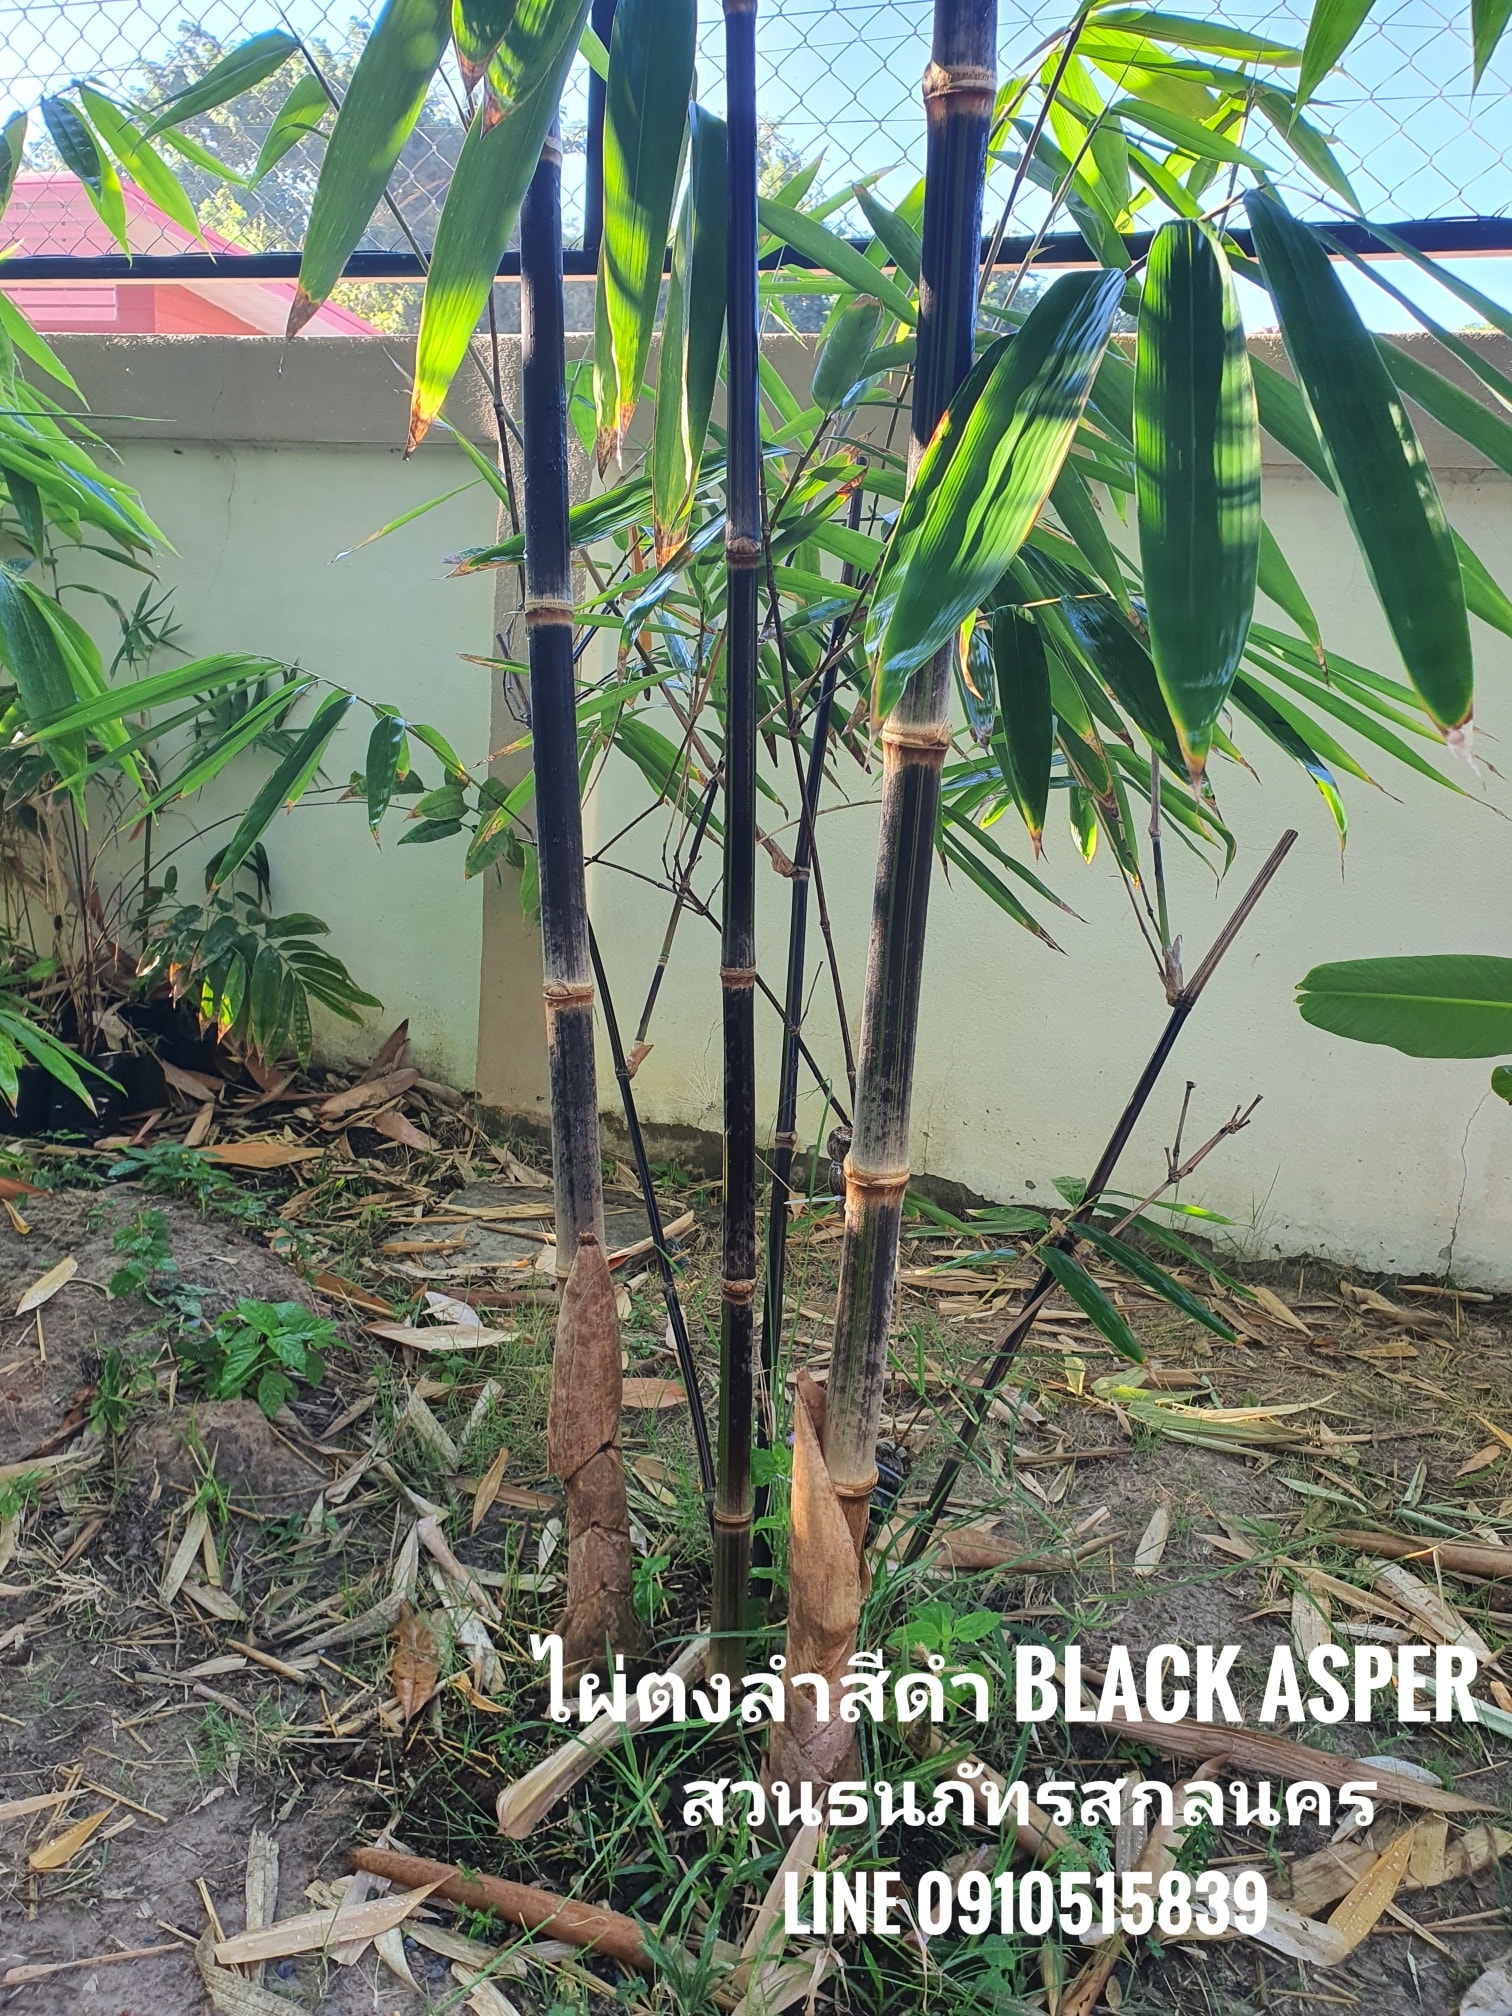 ไผ่ตงลำสีดำ ไผ่ Black Asper ต้นนี้แบ่งจากพี่ปรีชาเอามาตั้งต้นแม่